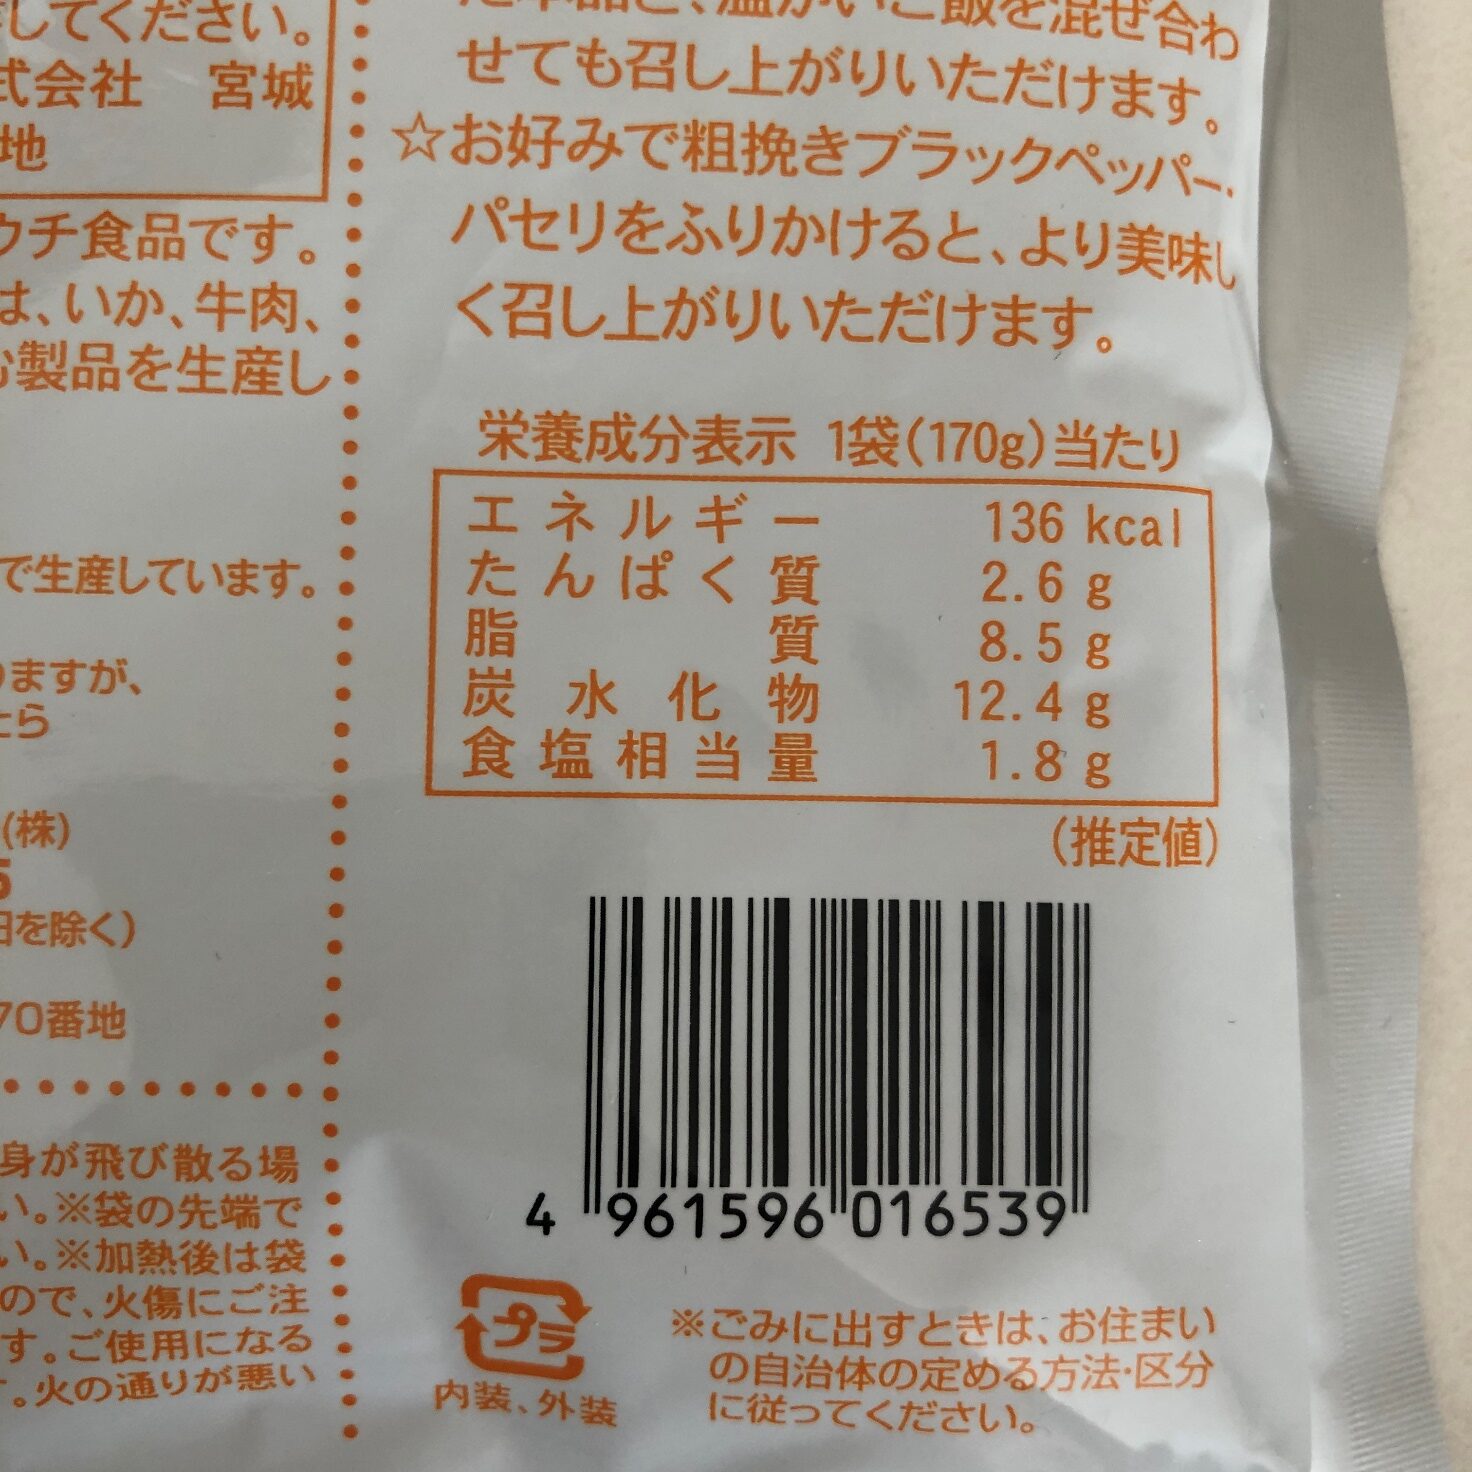 業務スーパーの大盛カルボナーラの栄養成分表示